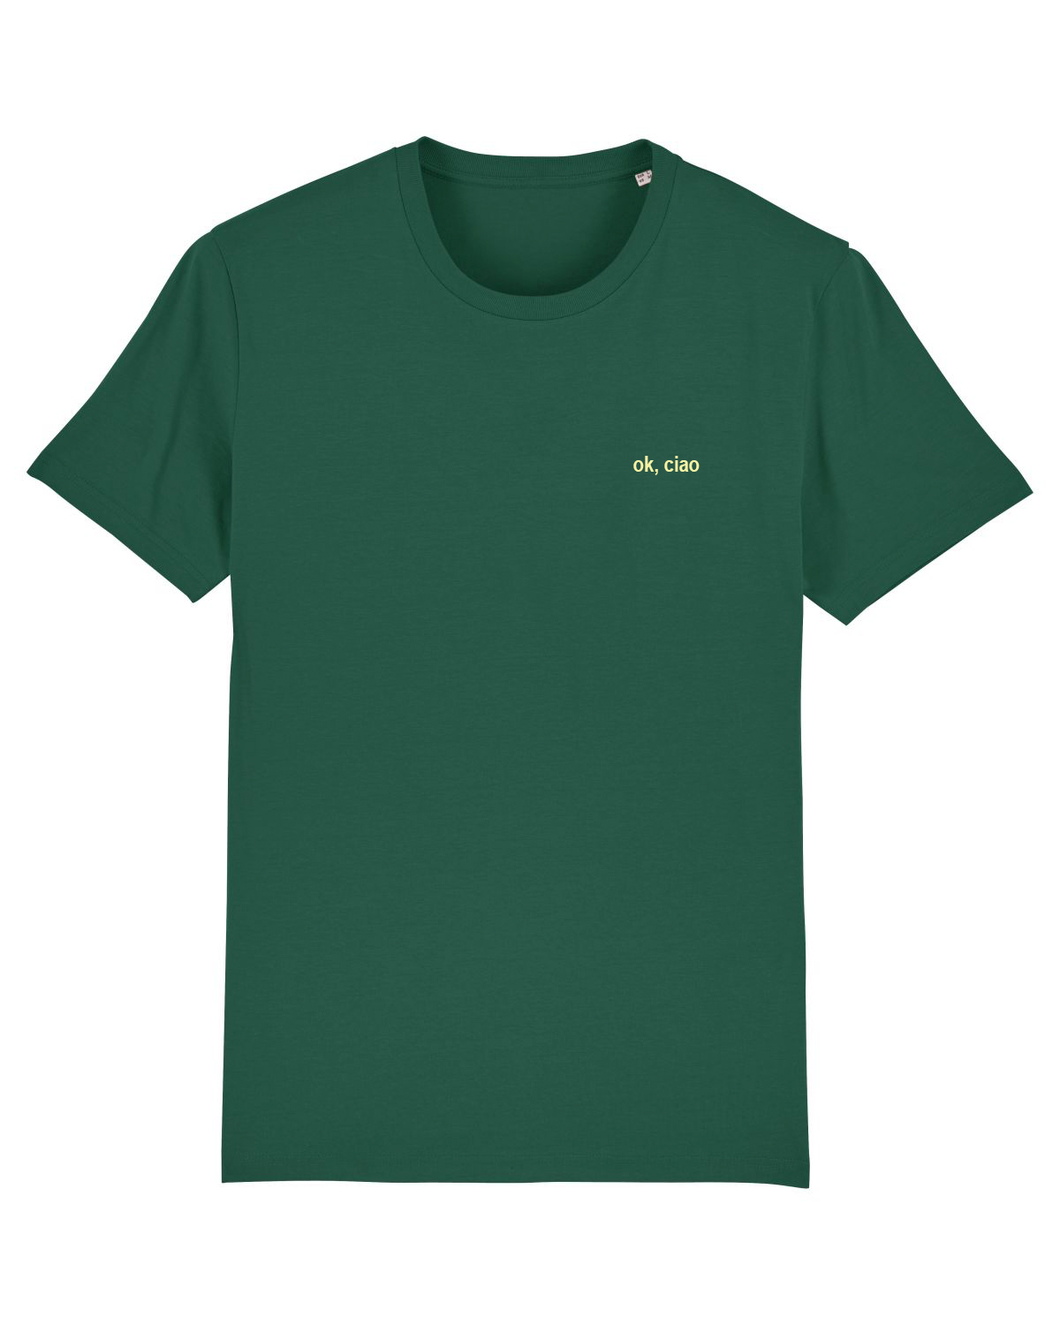 Ok, Ciao - T-Shirt - Green